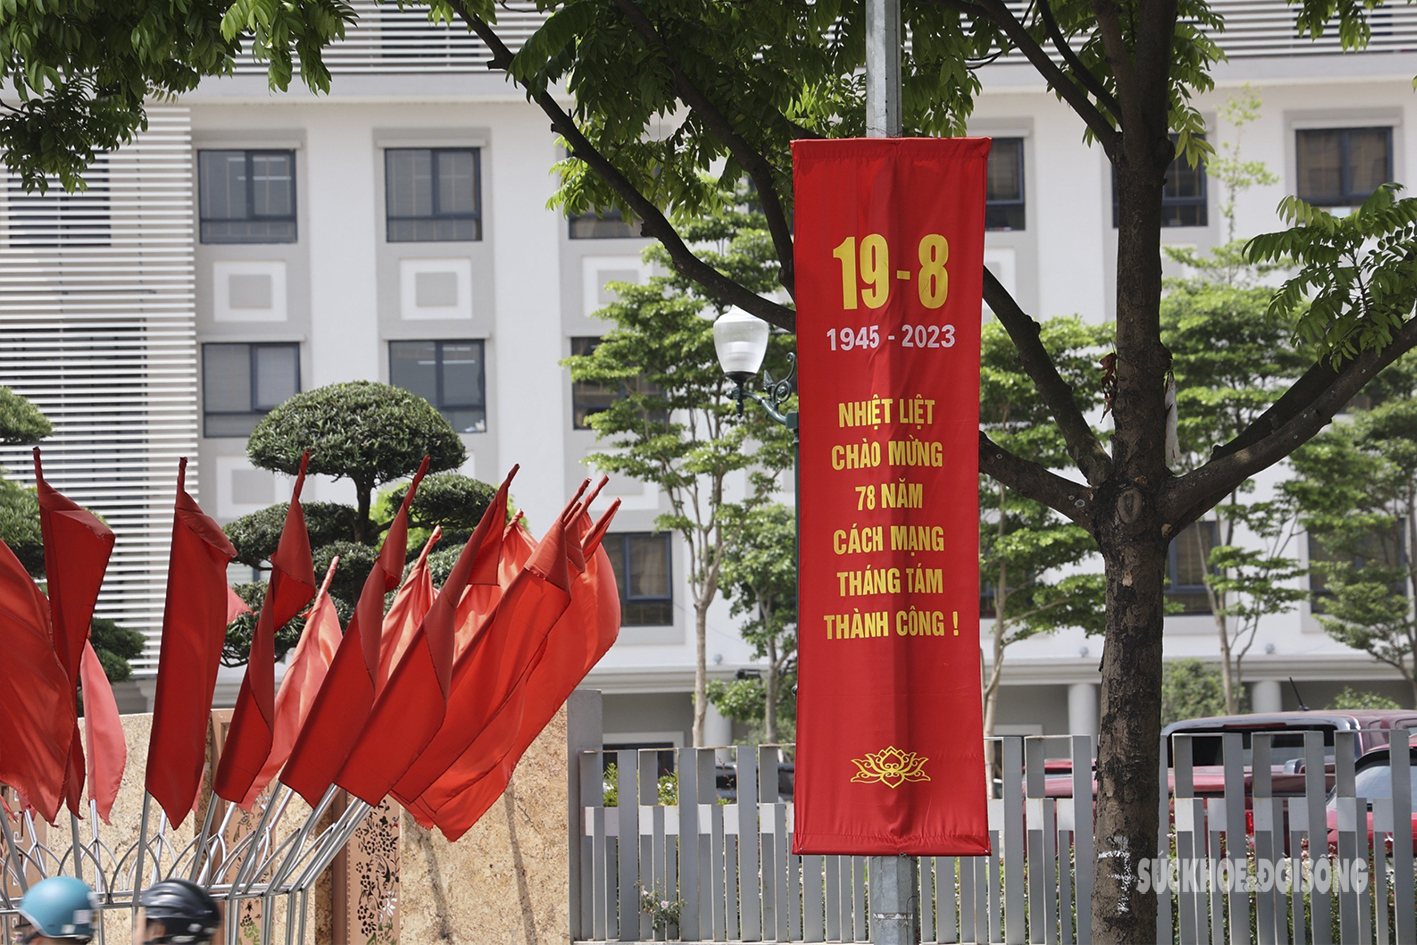 Đường phố Hà Nội rực rỡ sắc đỏ chào mừng ngày Quốc khánh 2/9 - Ảnh 14.